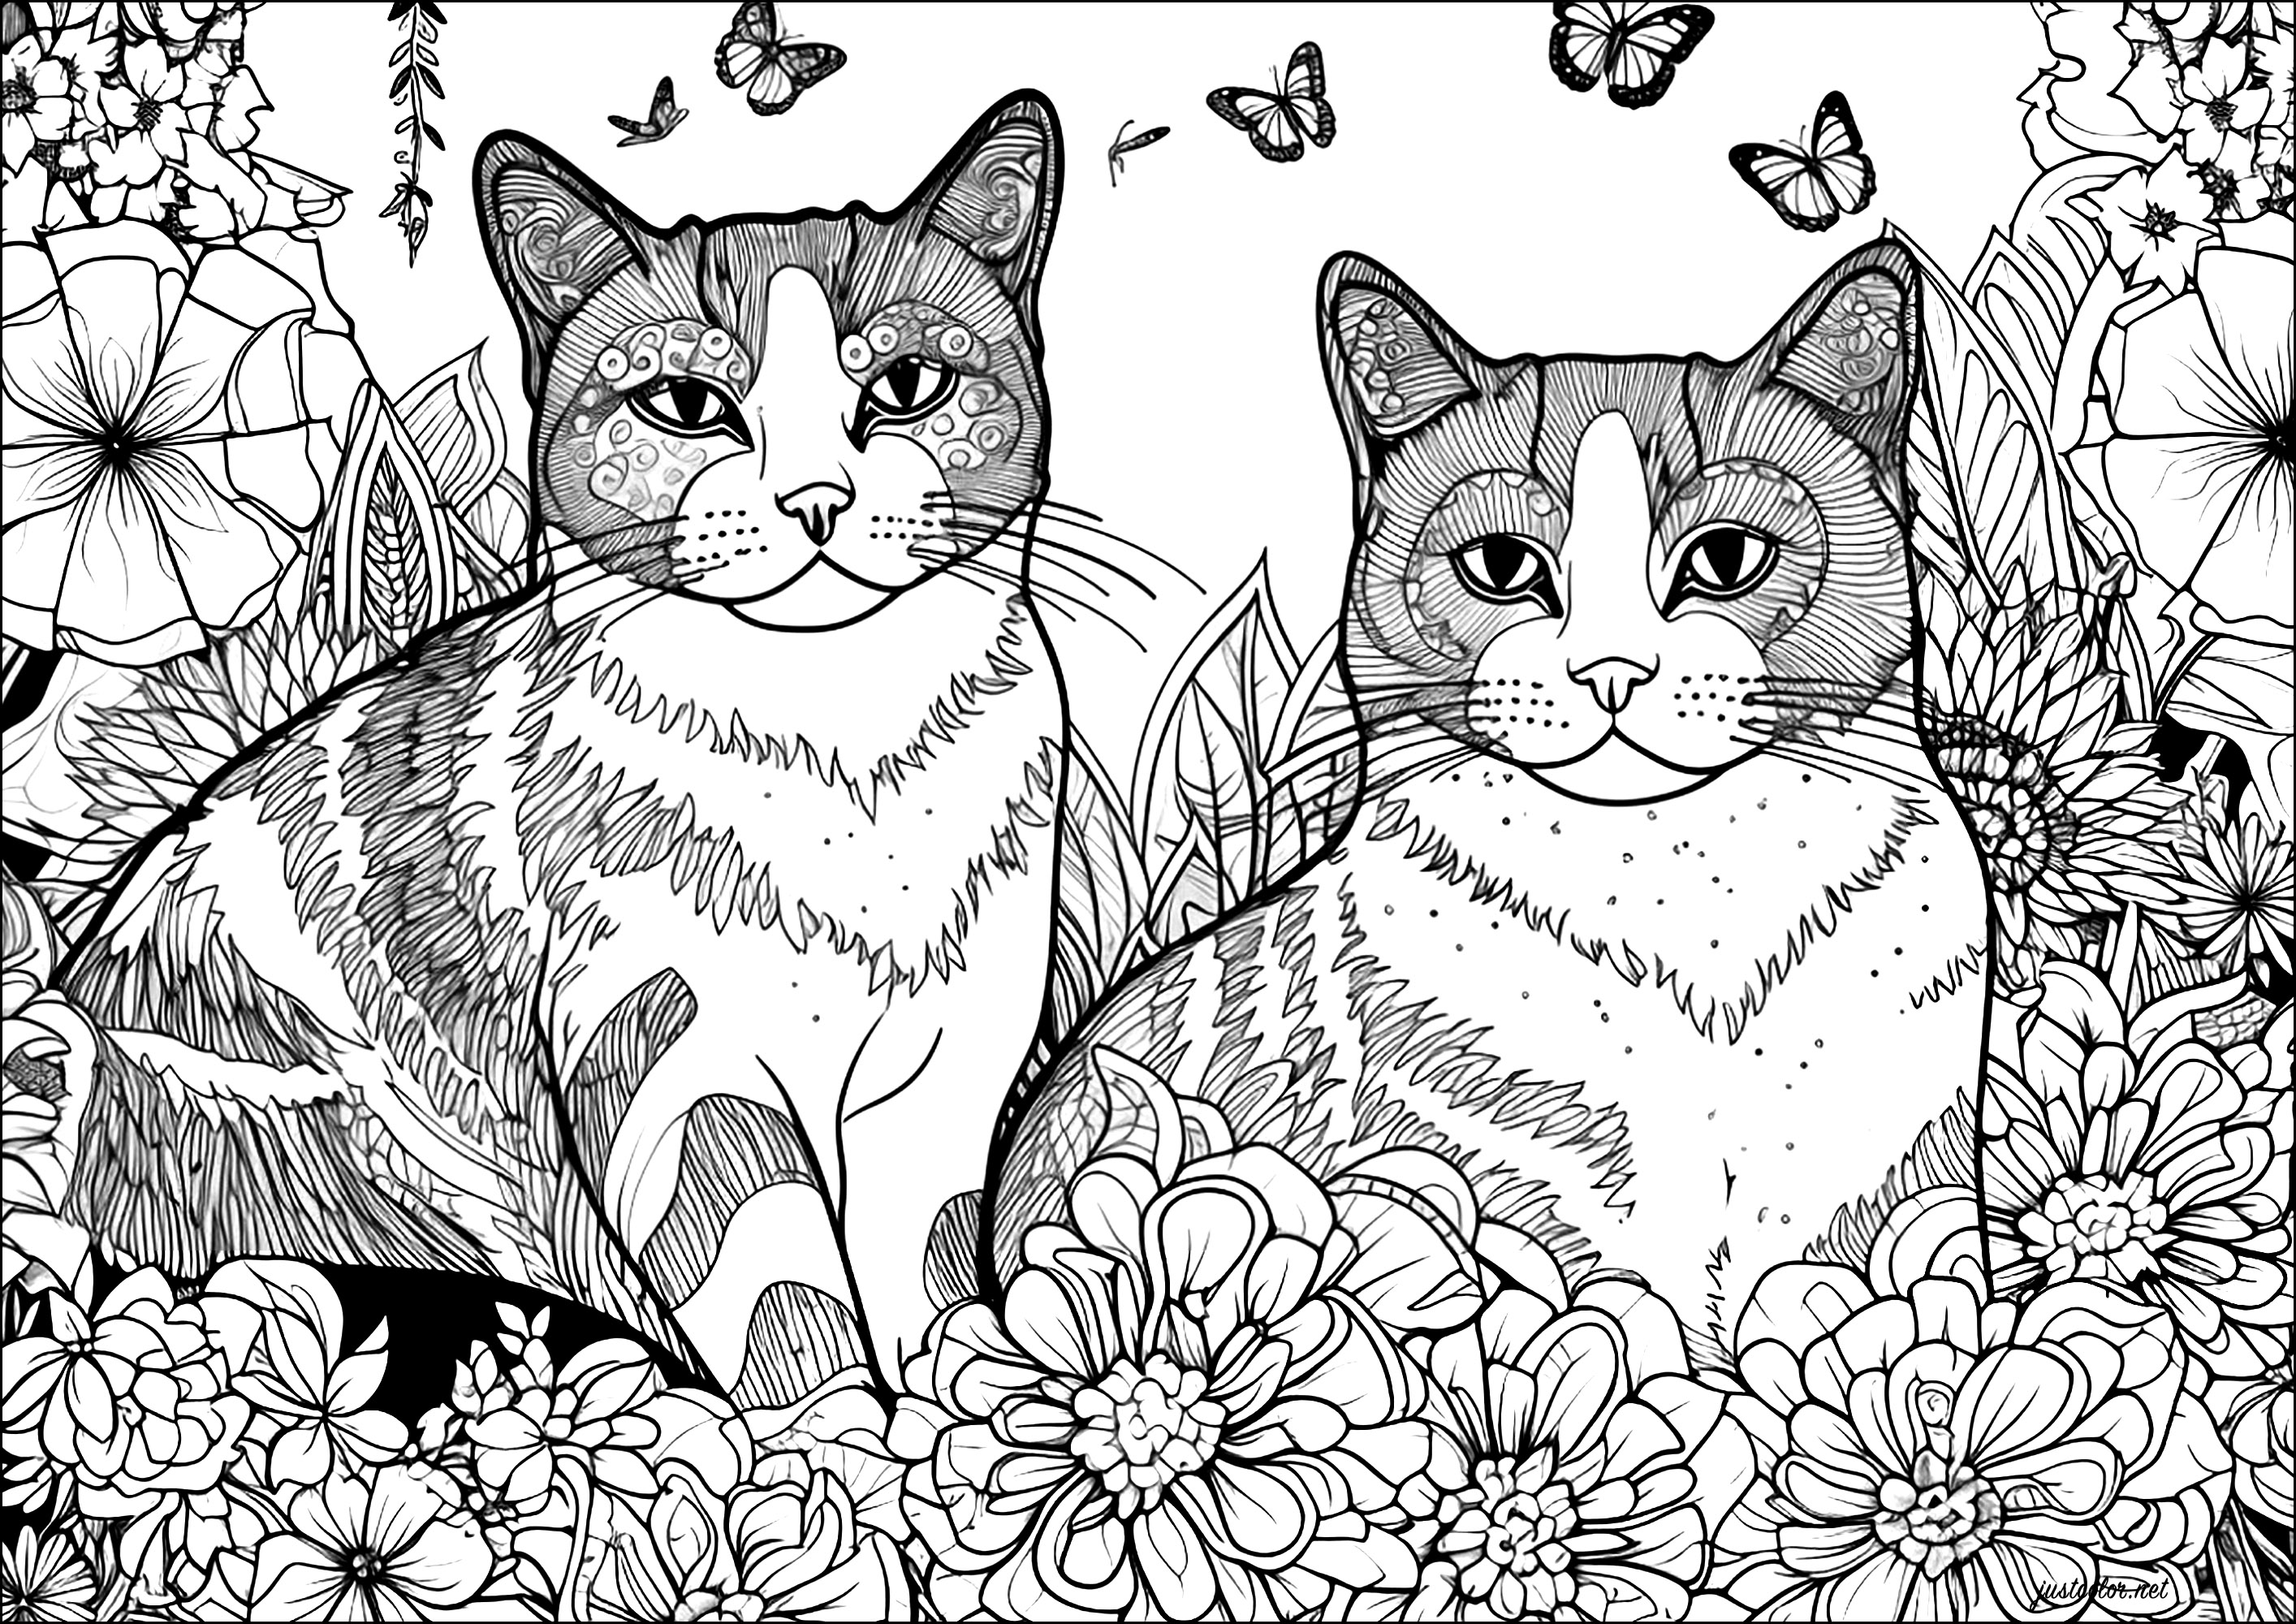 Deux chats avec fleurs et papillons. Un dessin complexe plein de jolis détails